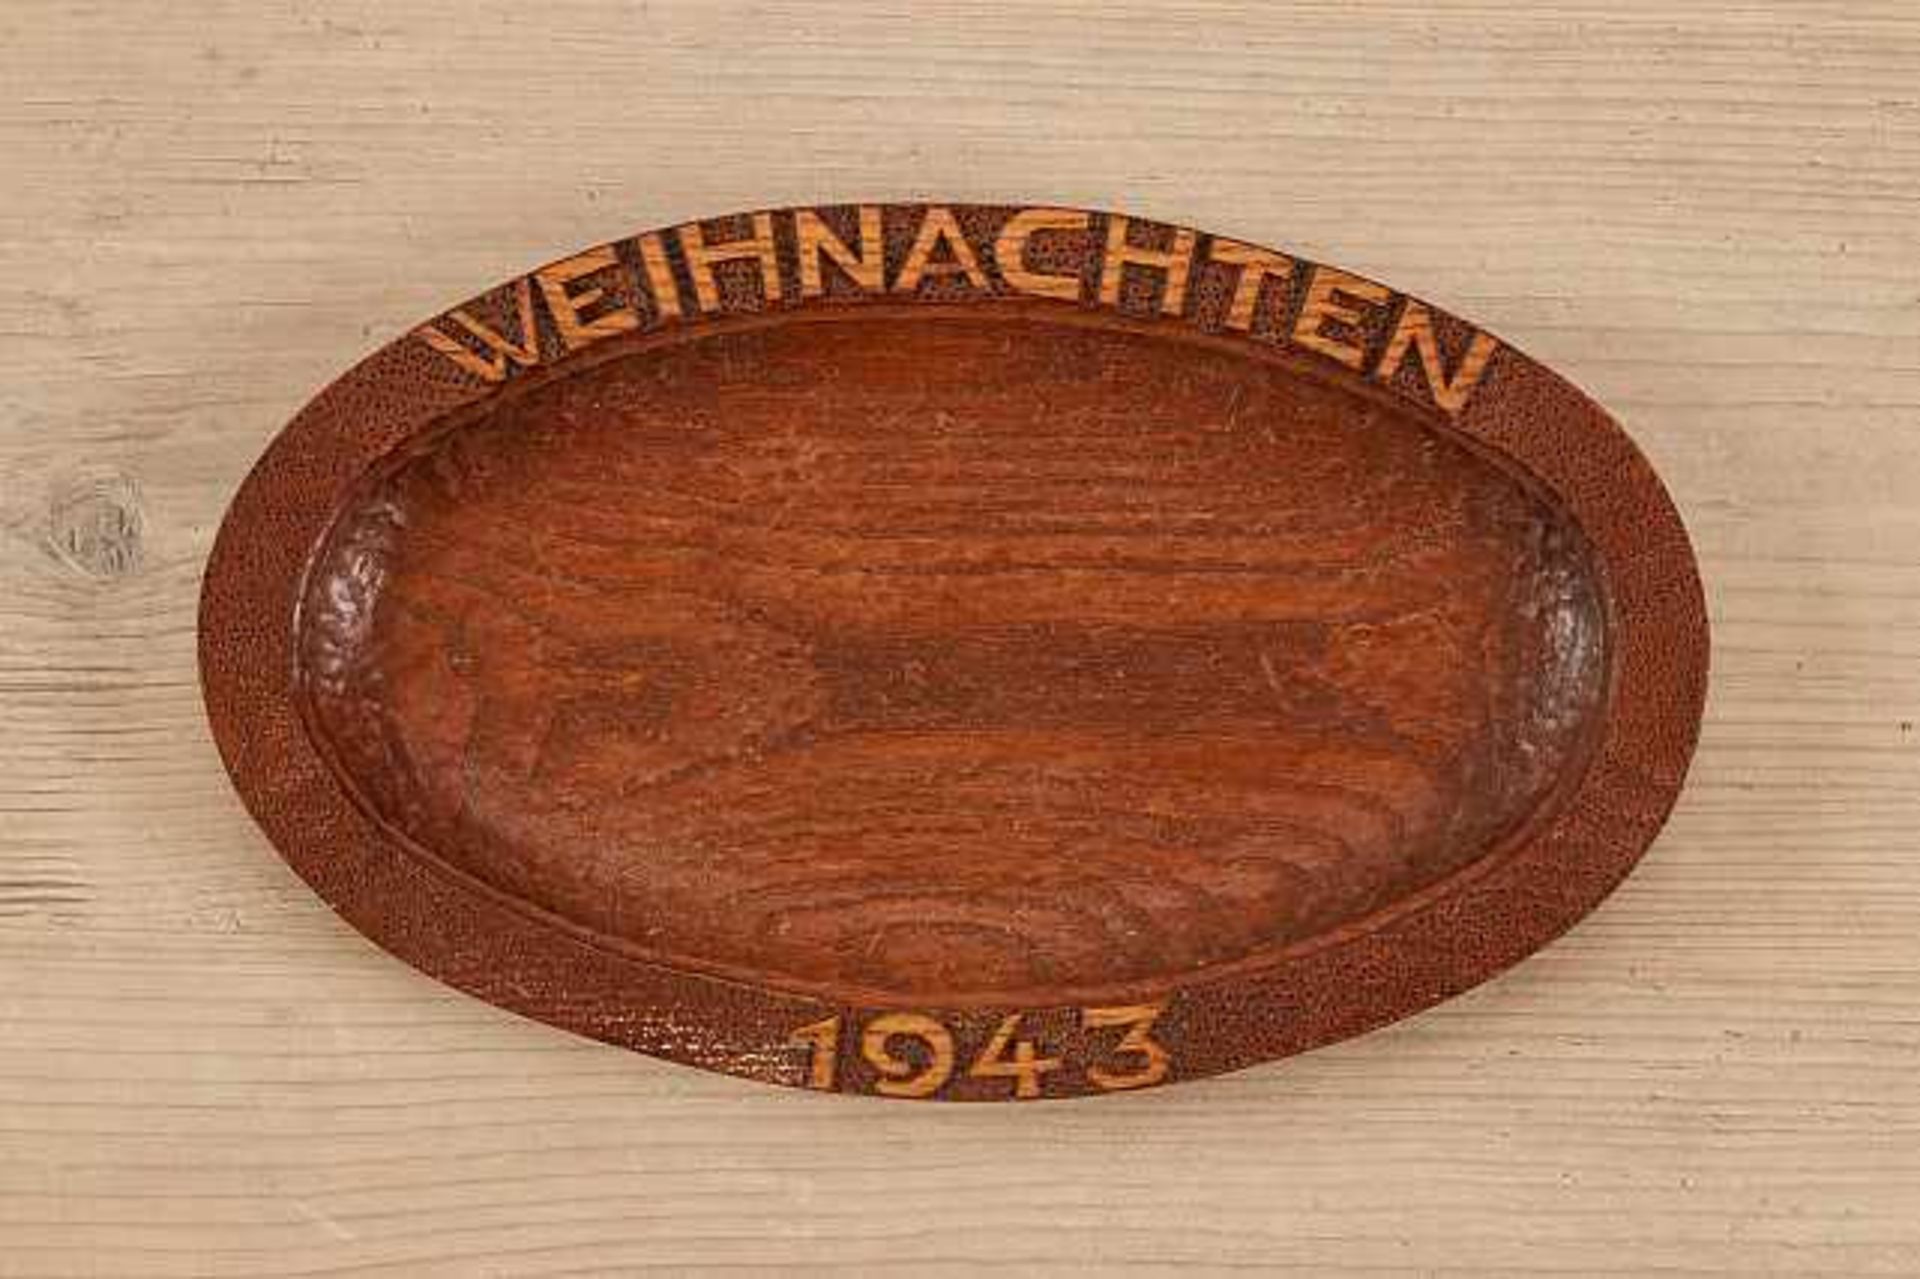 Deutsches Reich 1933 - 1945 - Allgemein : German Trench Art.Large hand carved bowl features "